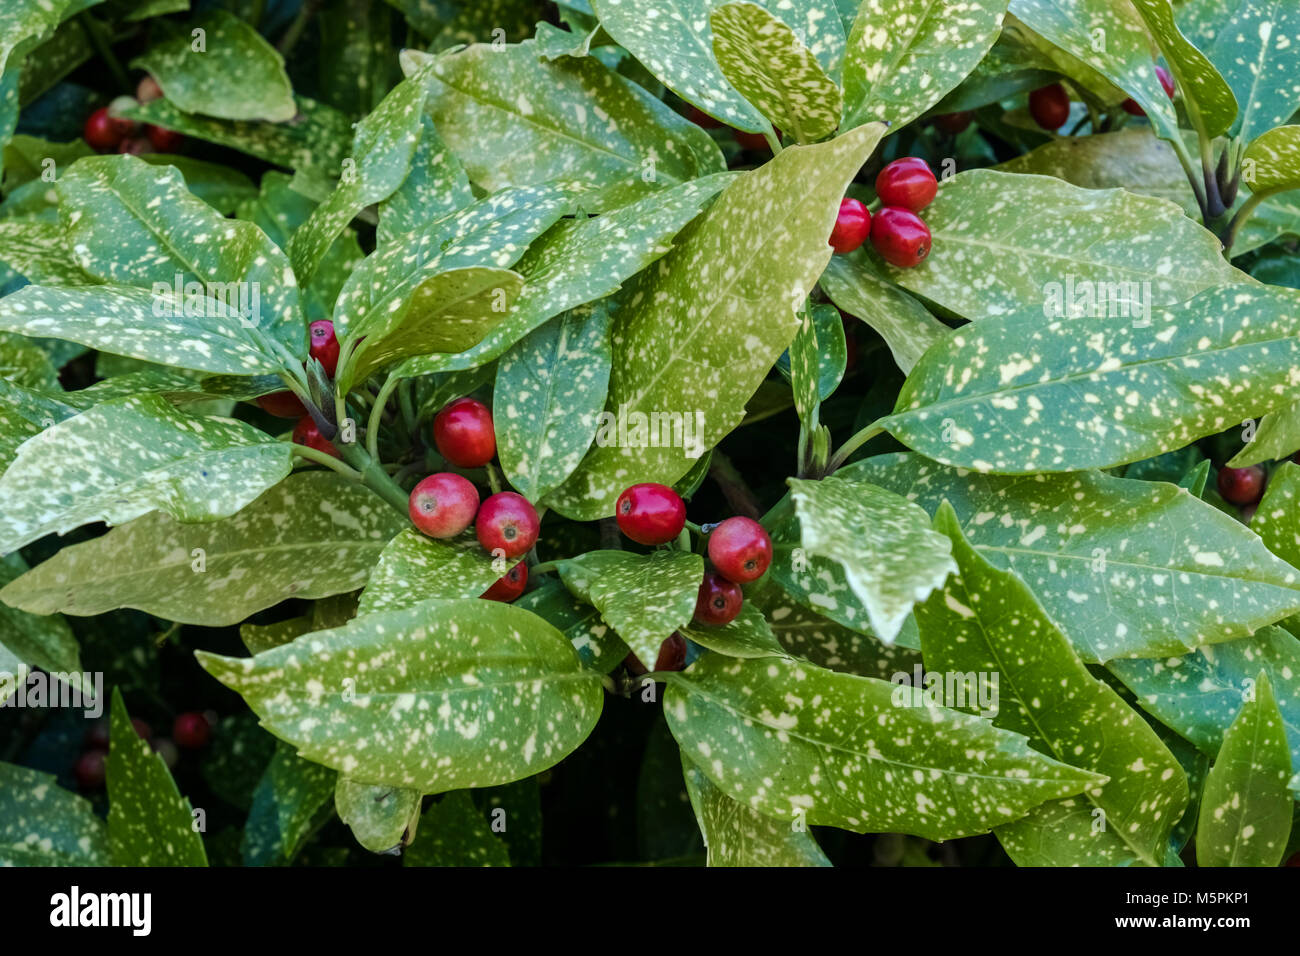 Aucuba japonica Crotonifolia, une plante femelle avec des baies rouges, également connu sous le nom de Laurel japonais ou le laurier, Février, England, UK Banque D'Images